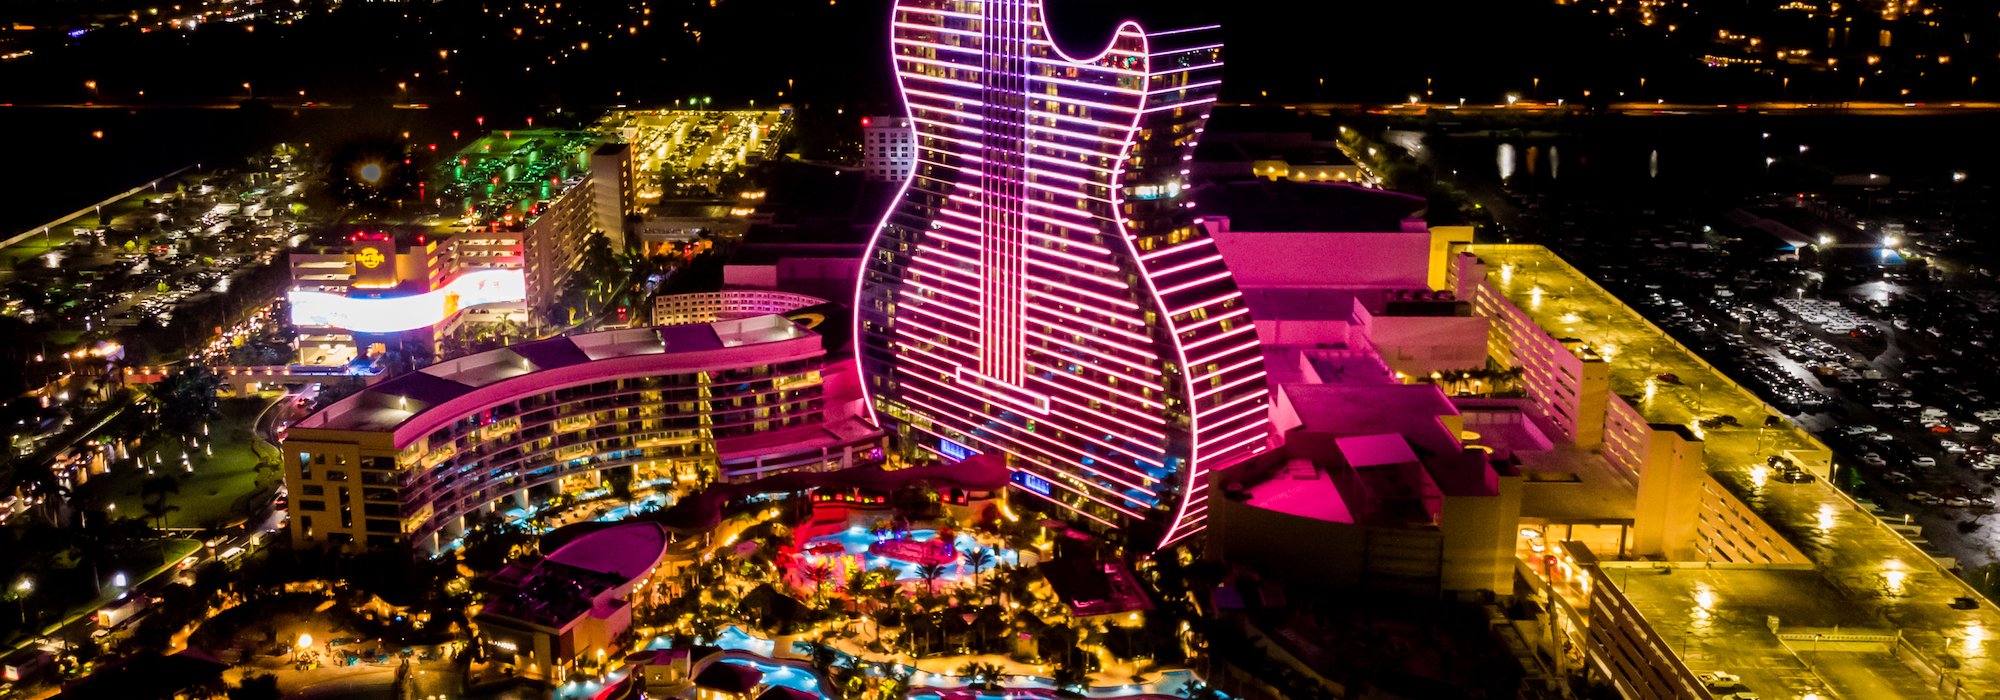 Hard Rock Casino Hotel, Florida USA